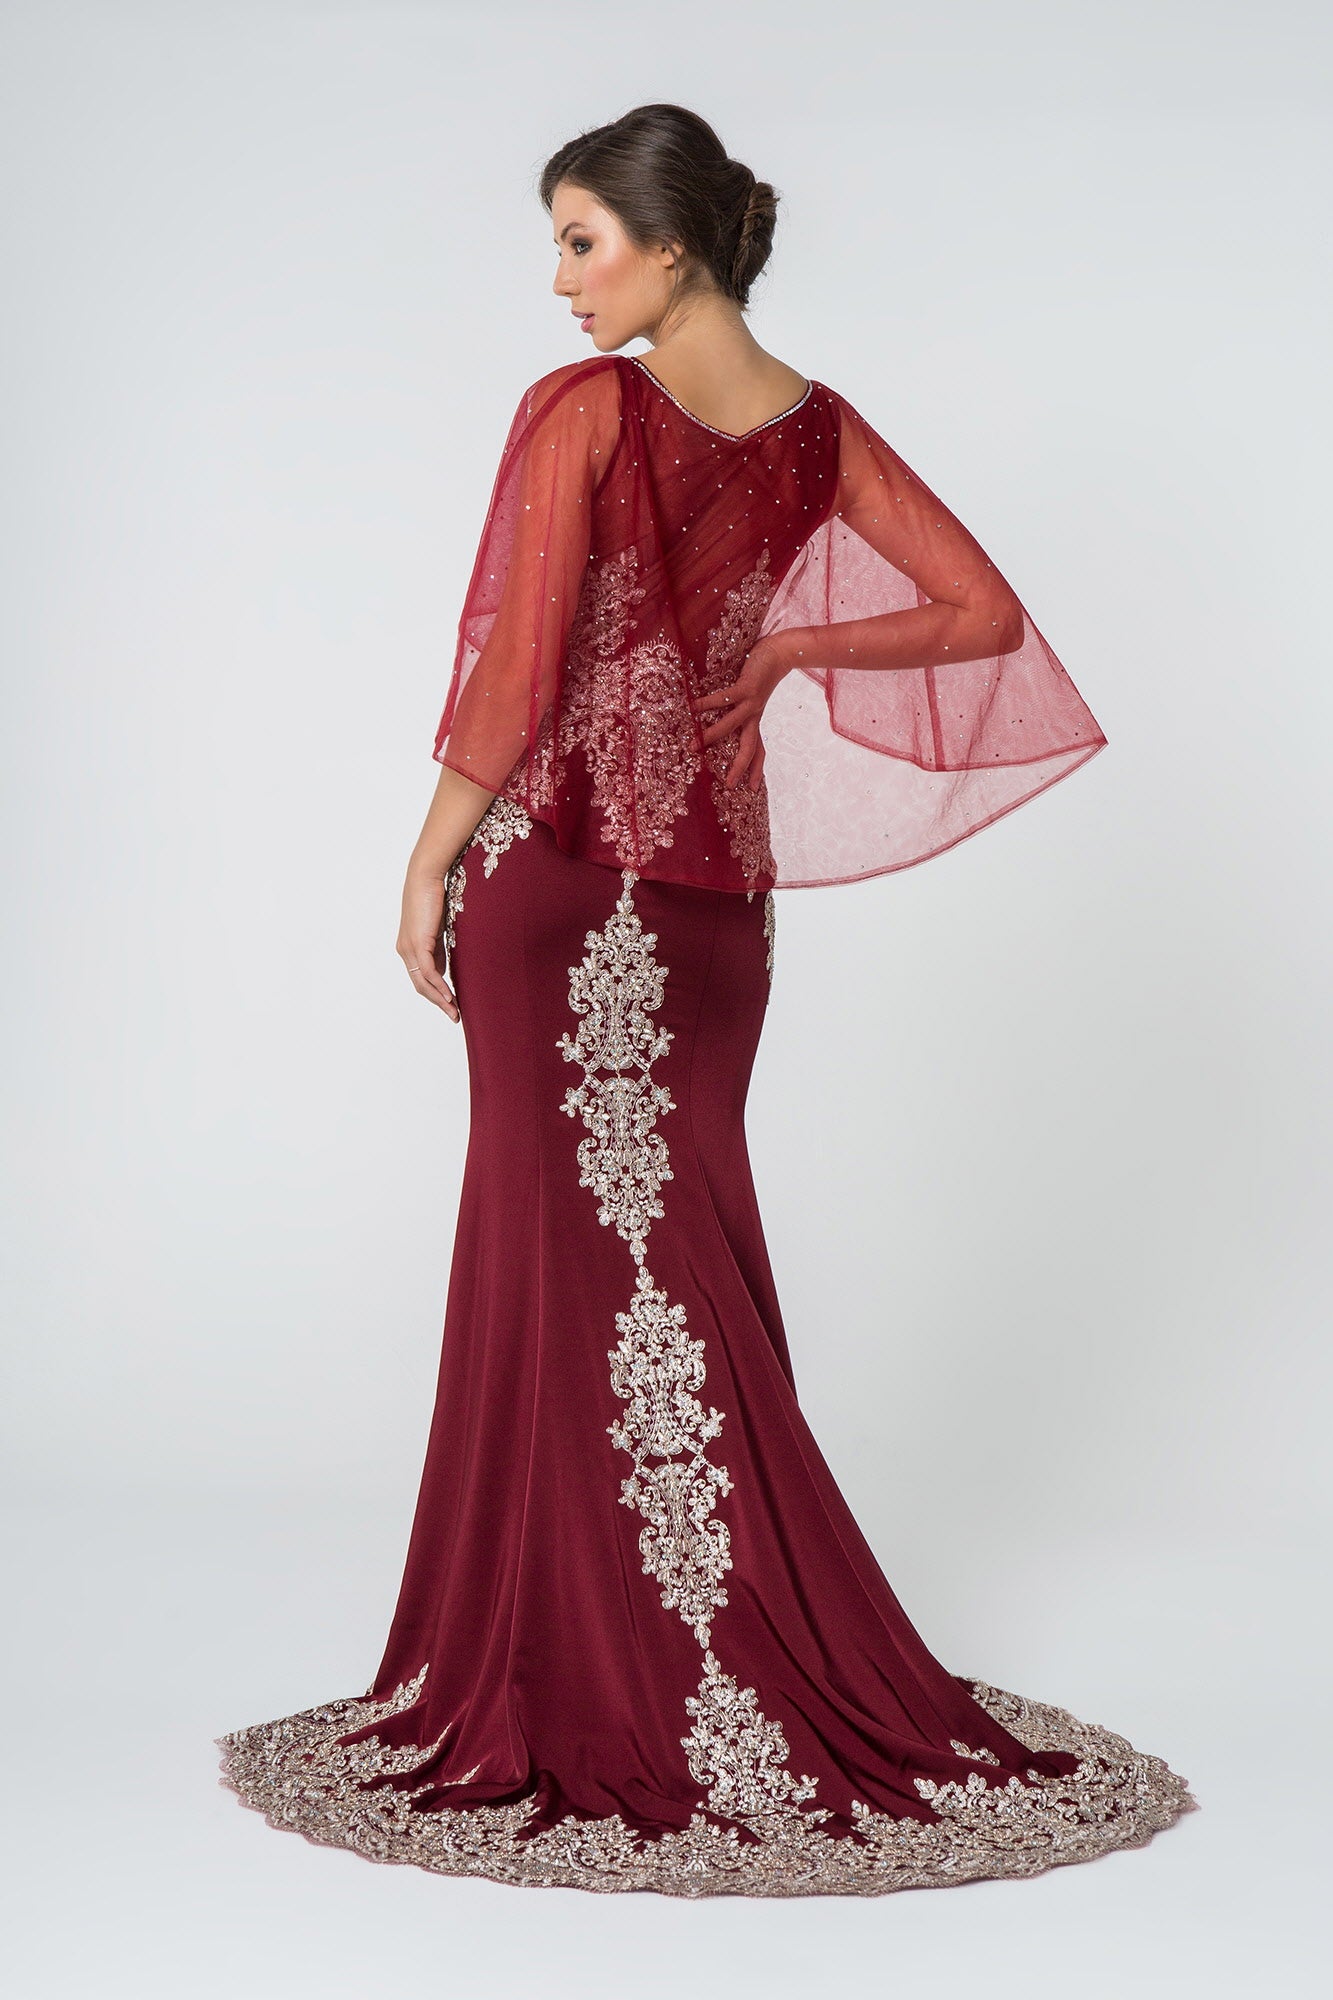 Long Formal Dress Evening Gown Cape Sleeves - The Dress Outlet Elizabeth K Burgundy